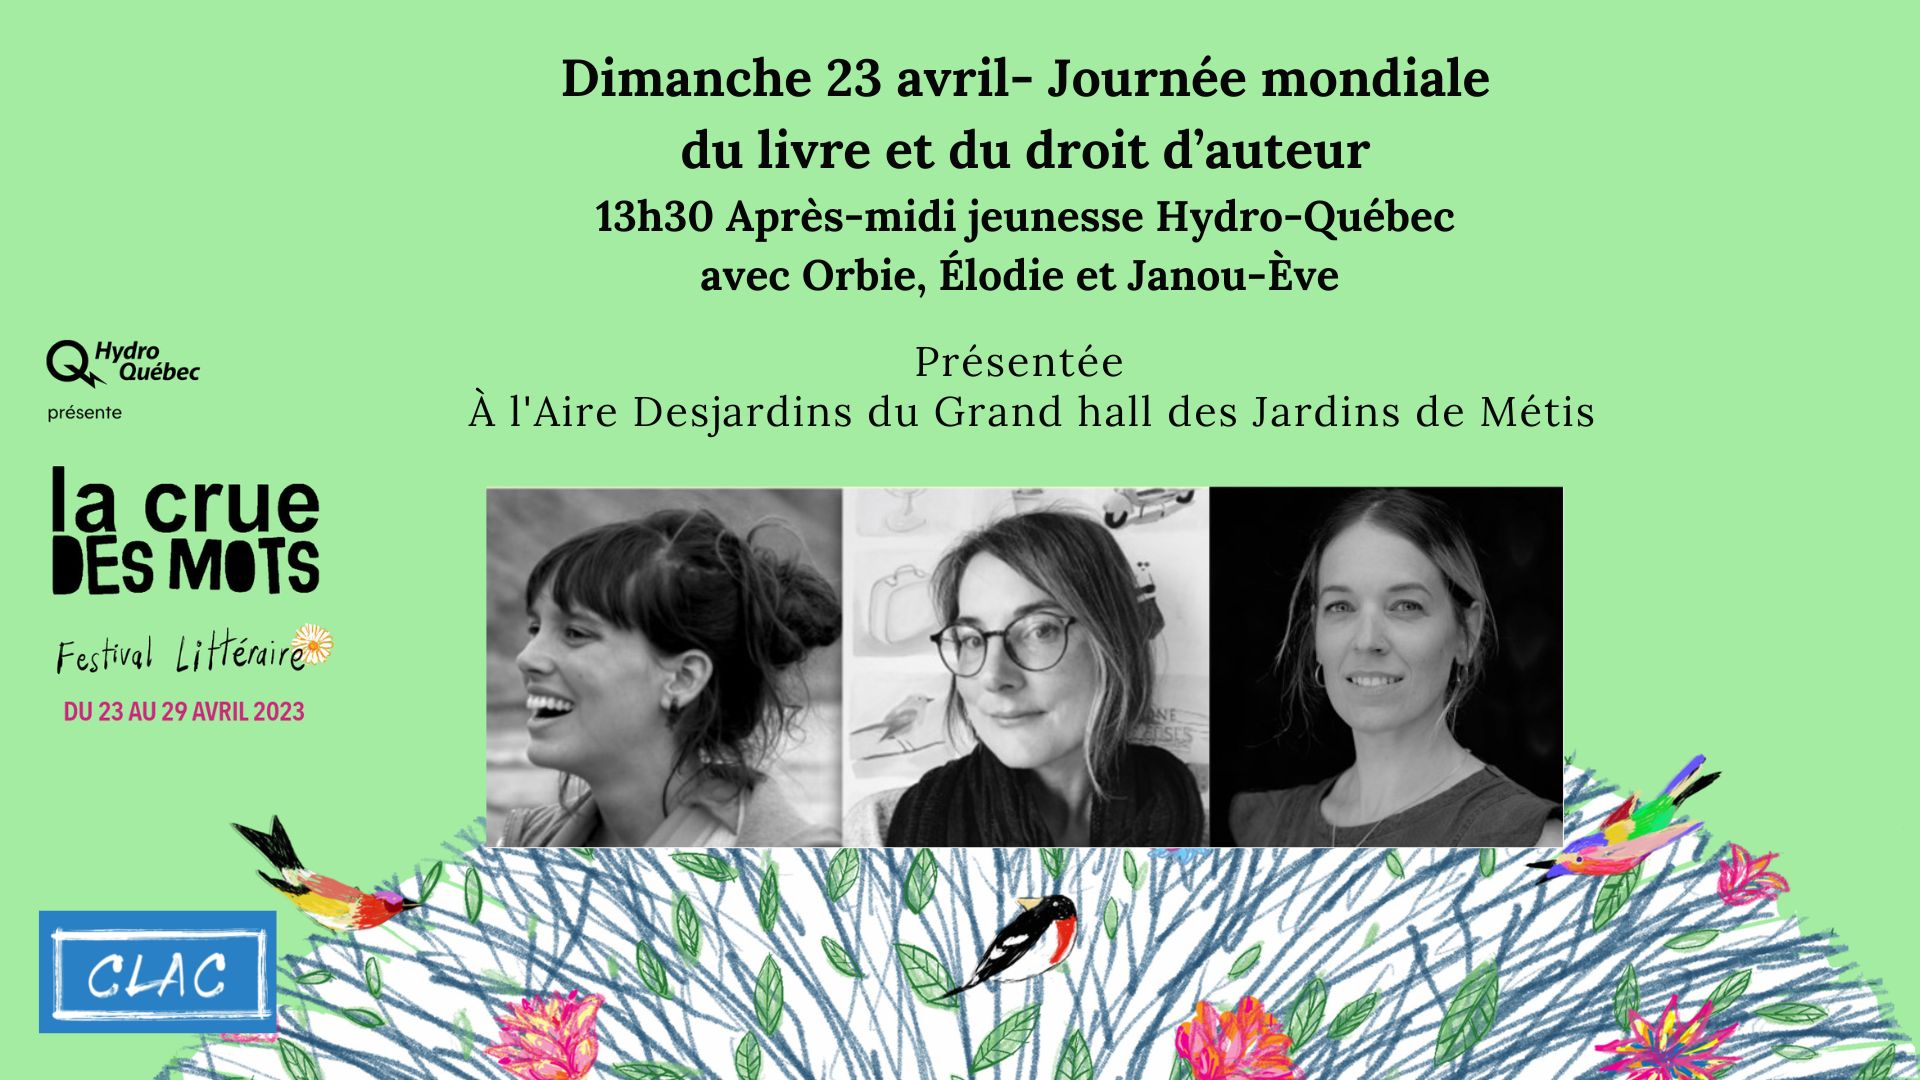 Journée mondiale du livre et du droit d'auteur - Après-midi jeunesse Hydro-Québec avec Orbie, Élodie et Janou-Ève